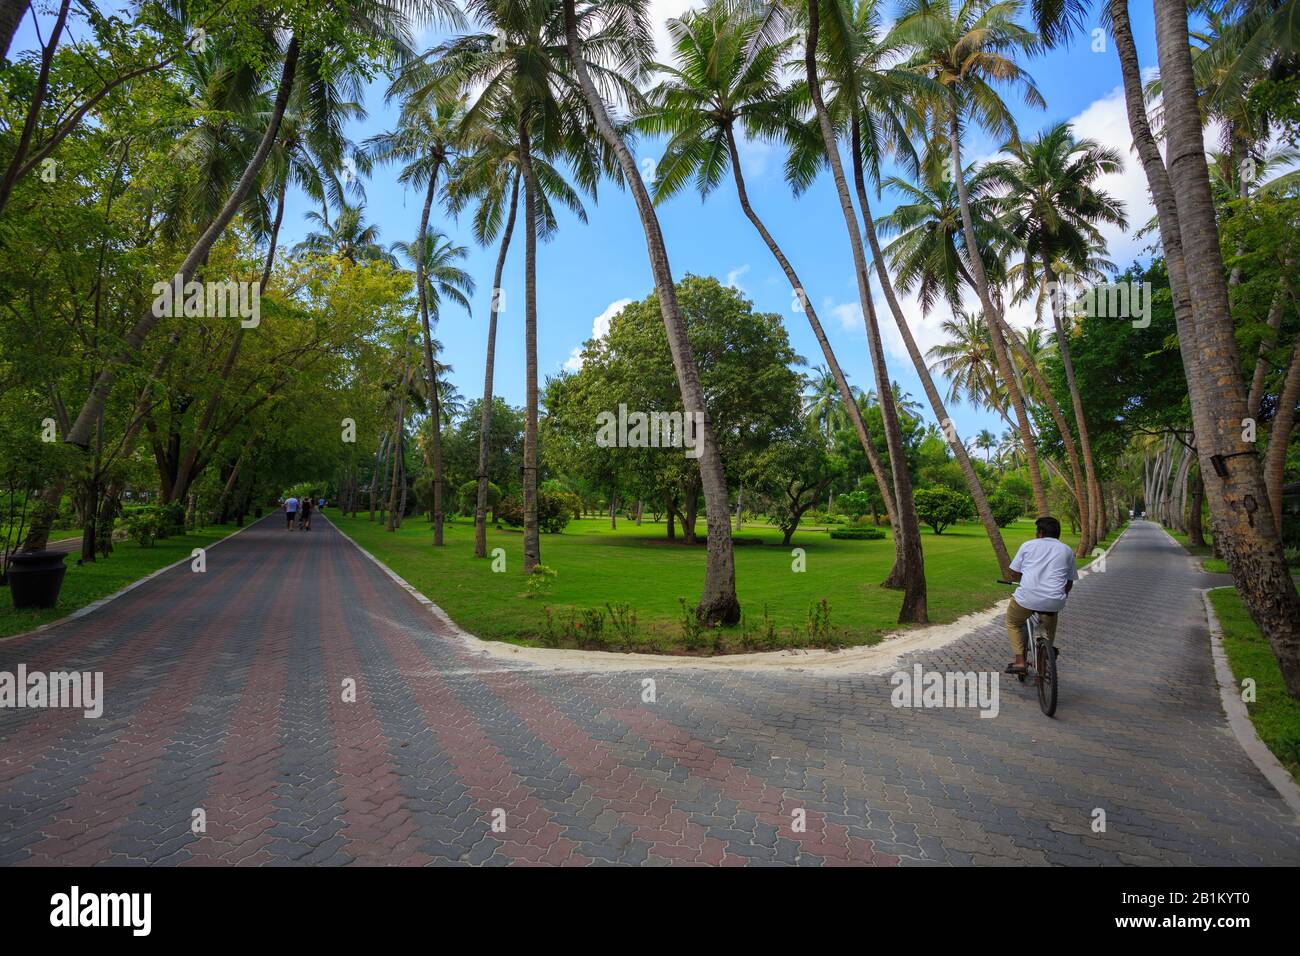 Sentiers pavées autour d'une belle pelouse entourée de cocotiers Banque D'Images